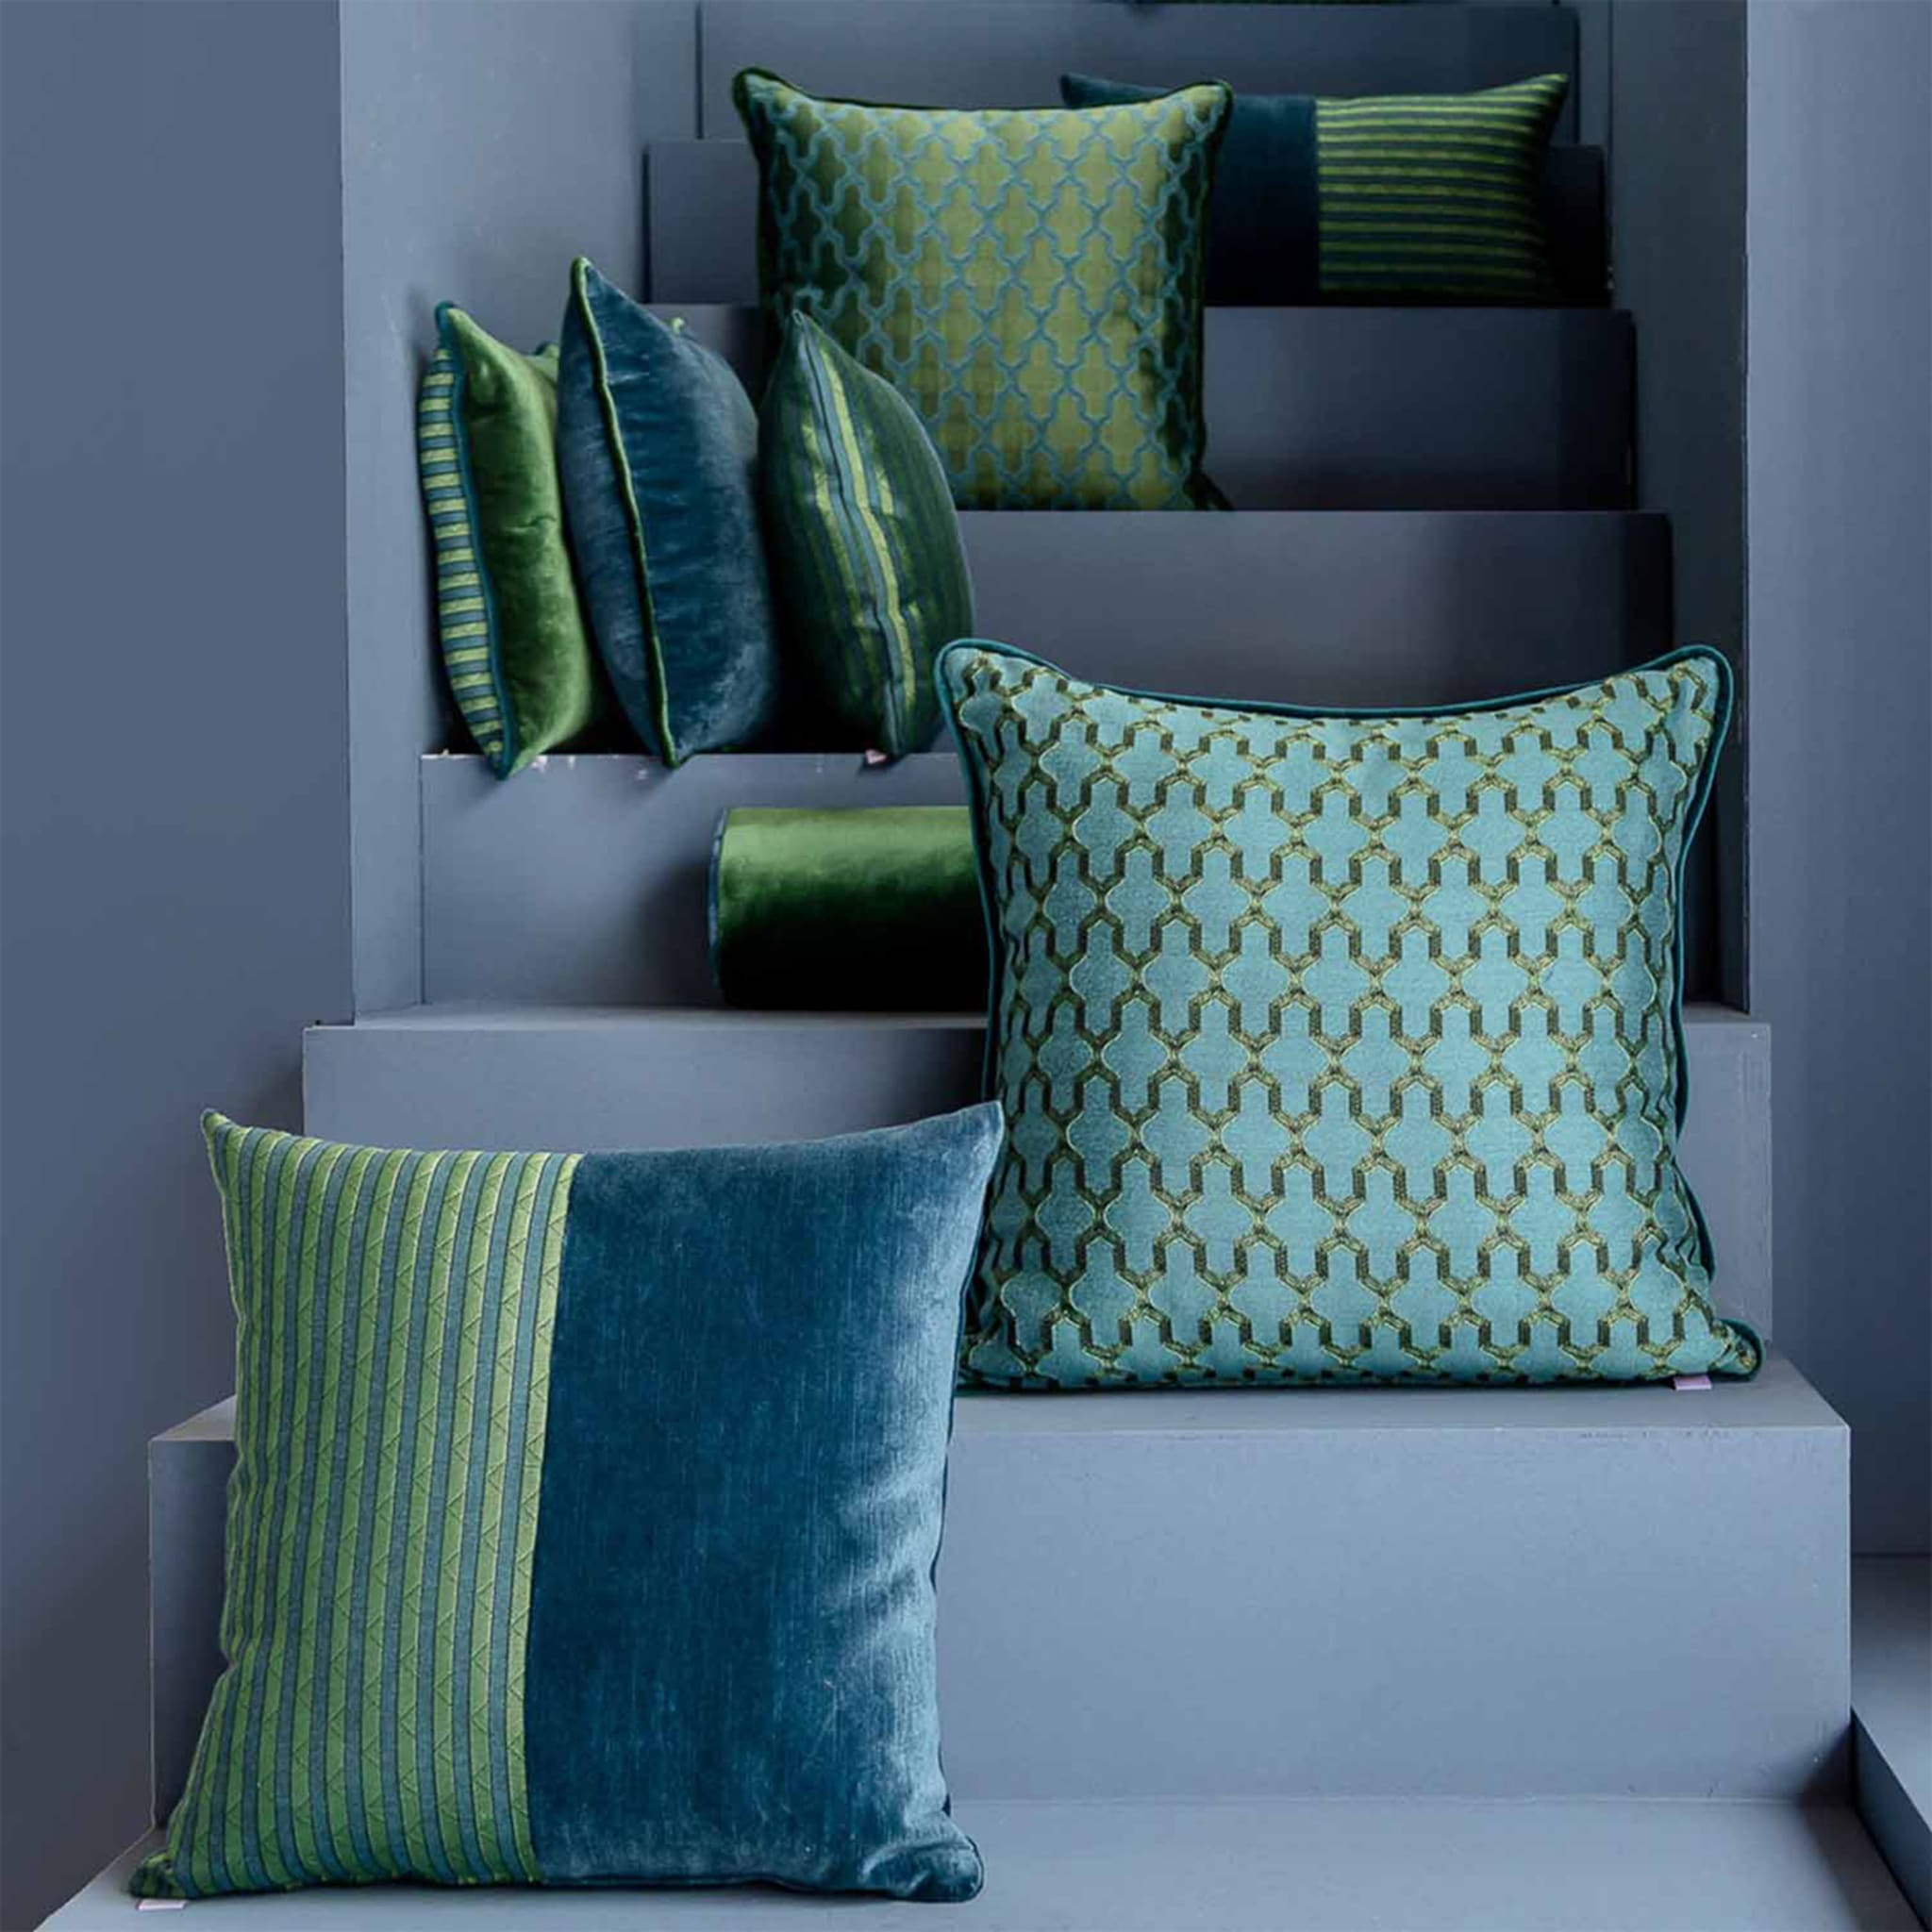 Green Carrè Cushion in striped jacquard fabric - Alternative view 4